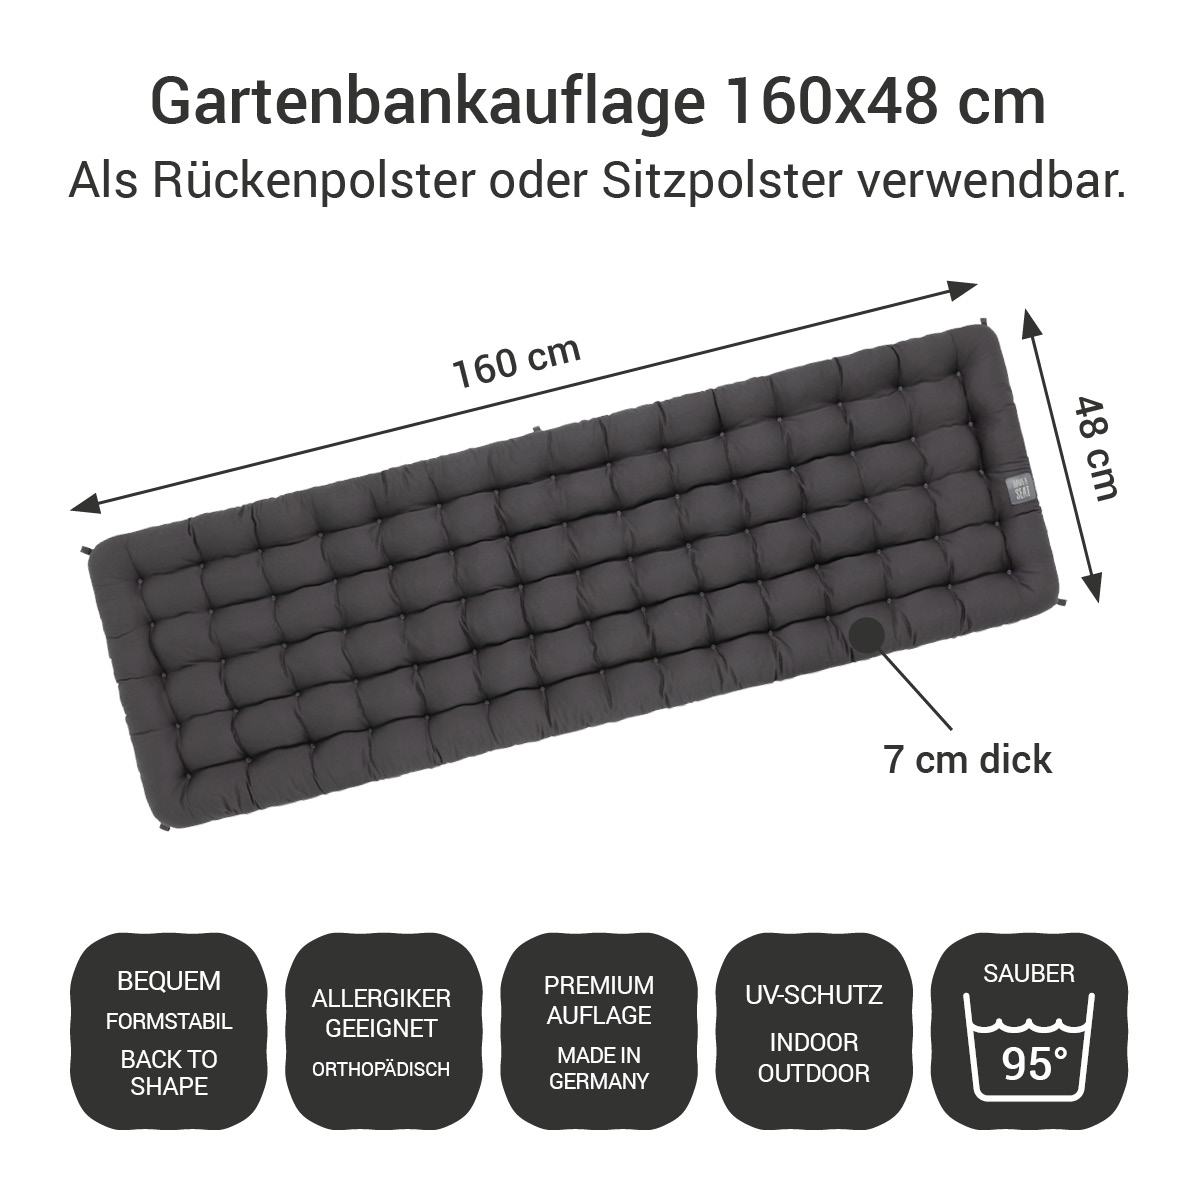 Gartenbank Auflagen (2tlg.) grau 160x48 cm / 160 x 50 cm | bequem & orthopädisch, komplett im Ganzen waschbar bis 95°C, wetterfest, Made in Germany